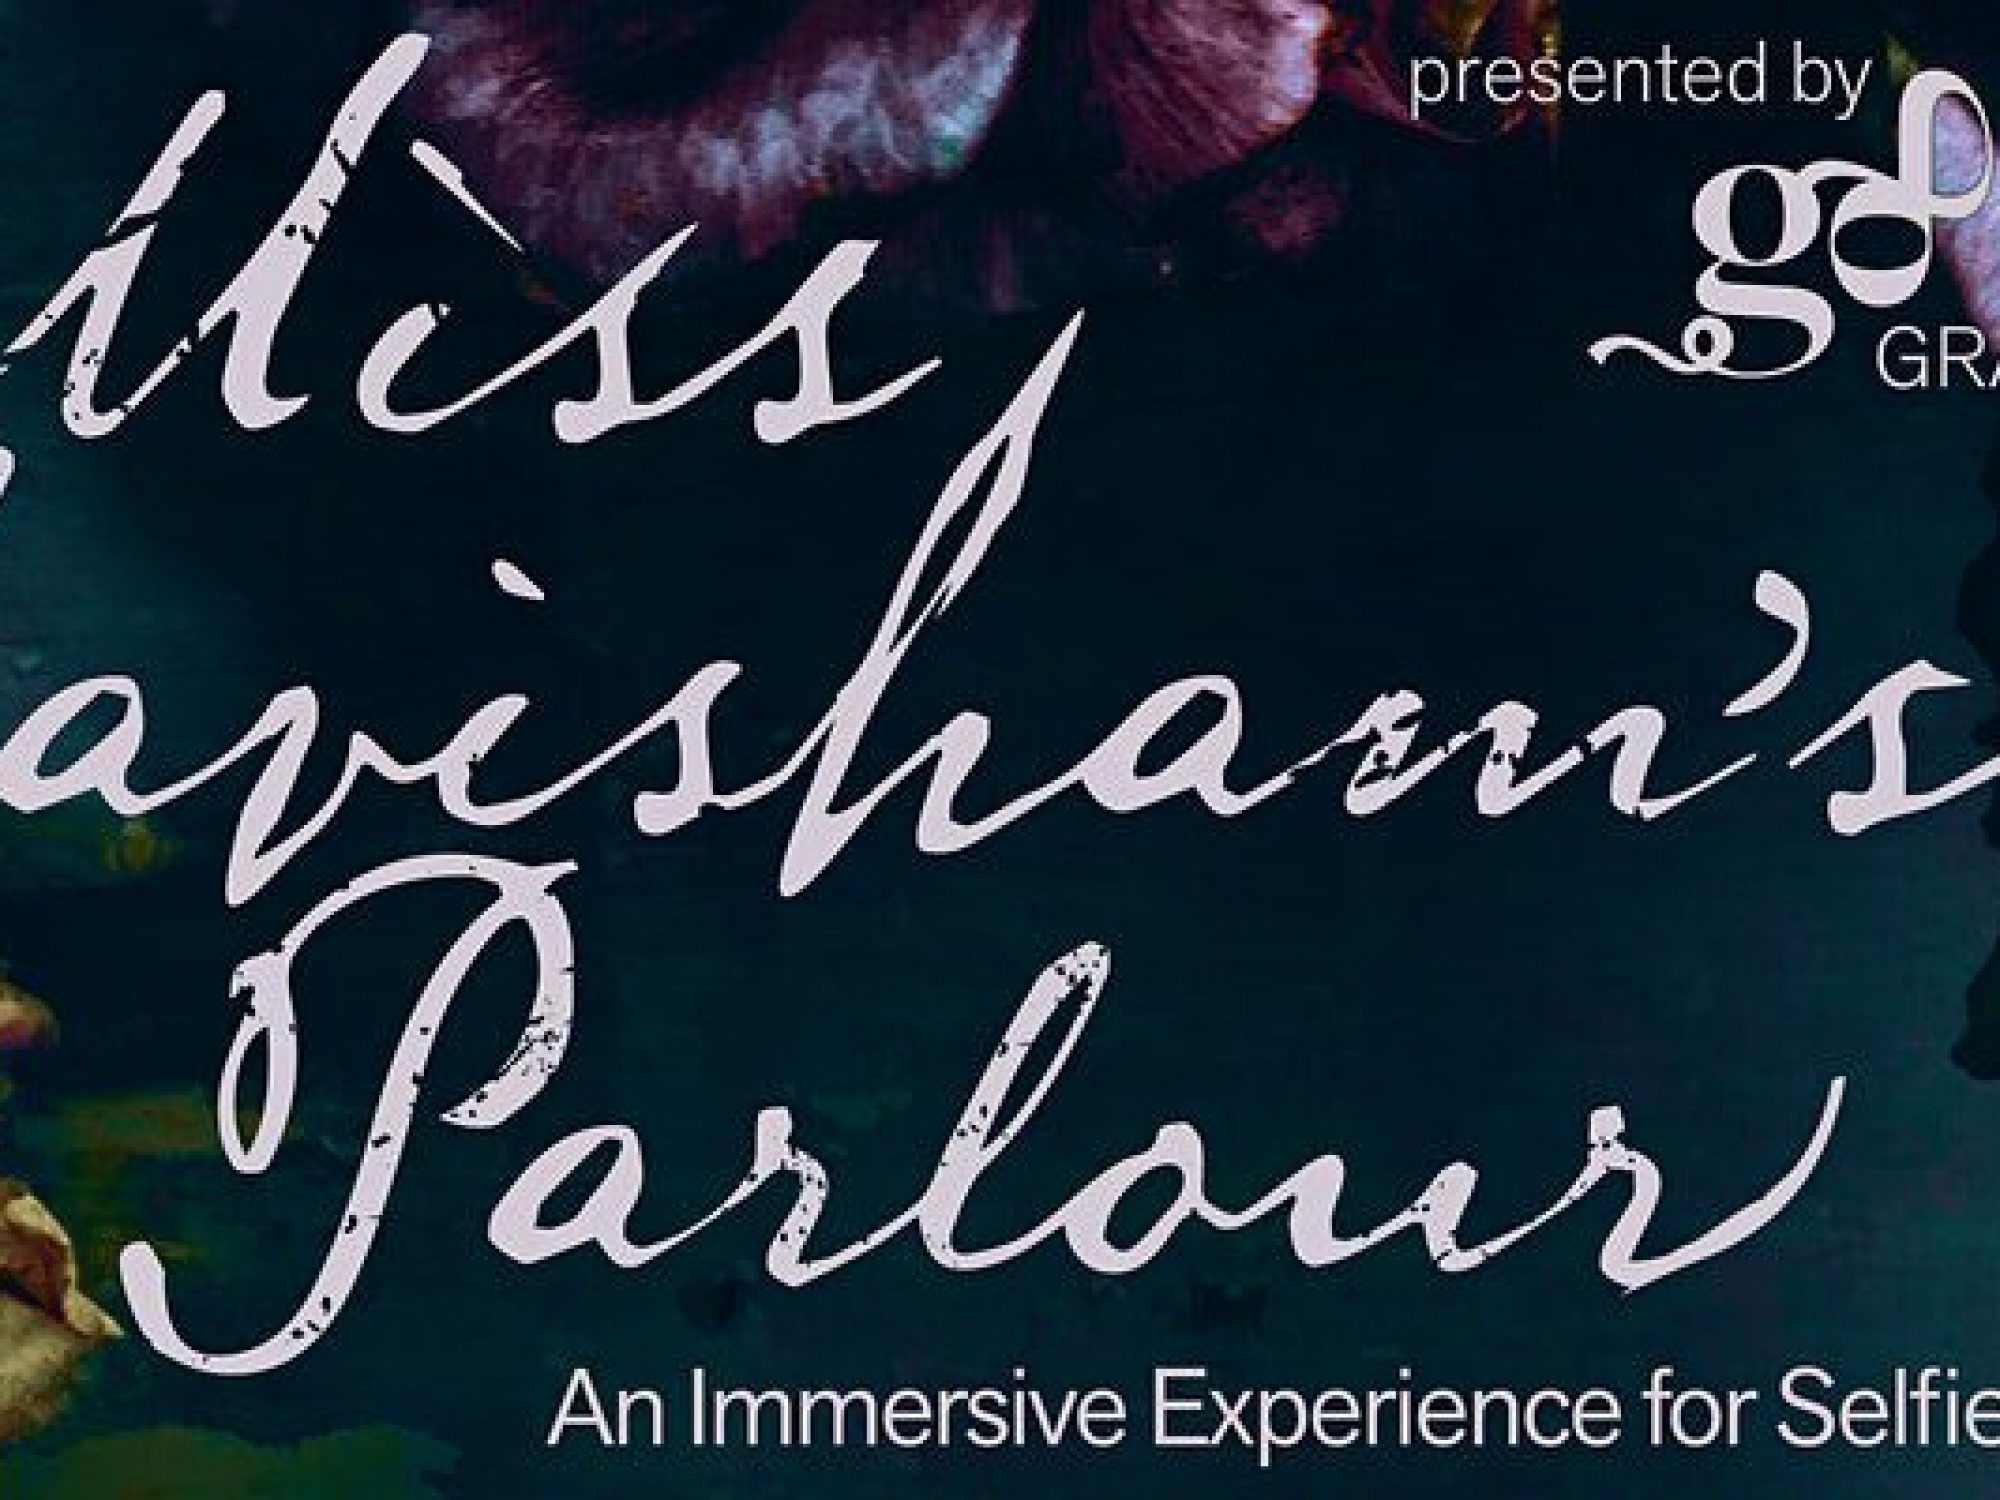 Miss Havisham's Parlour flyer